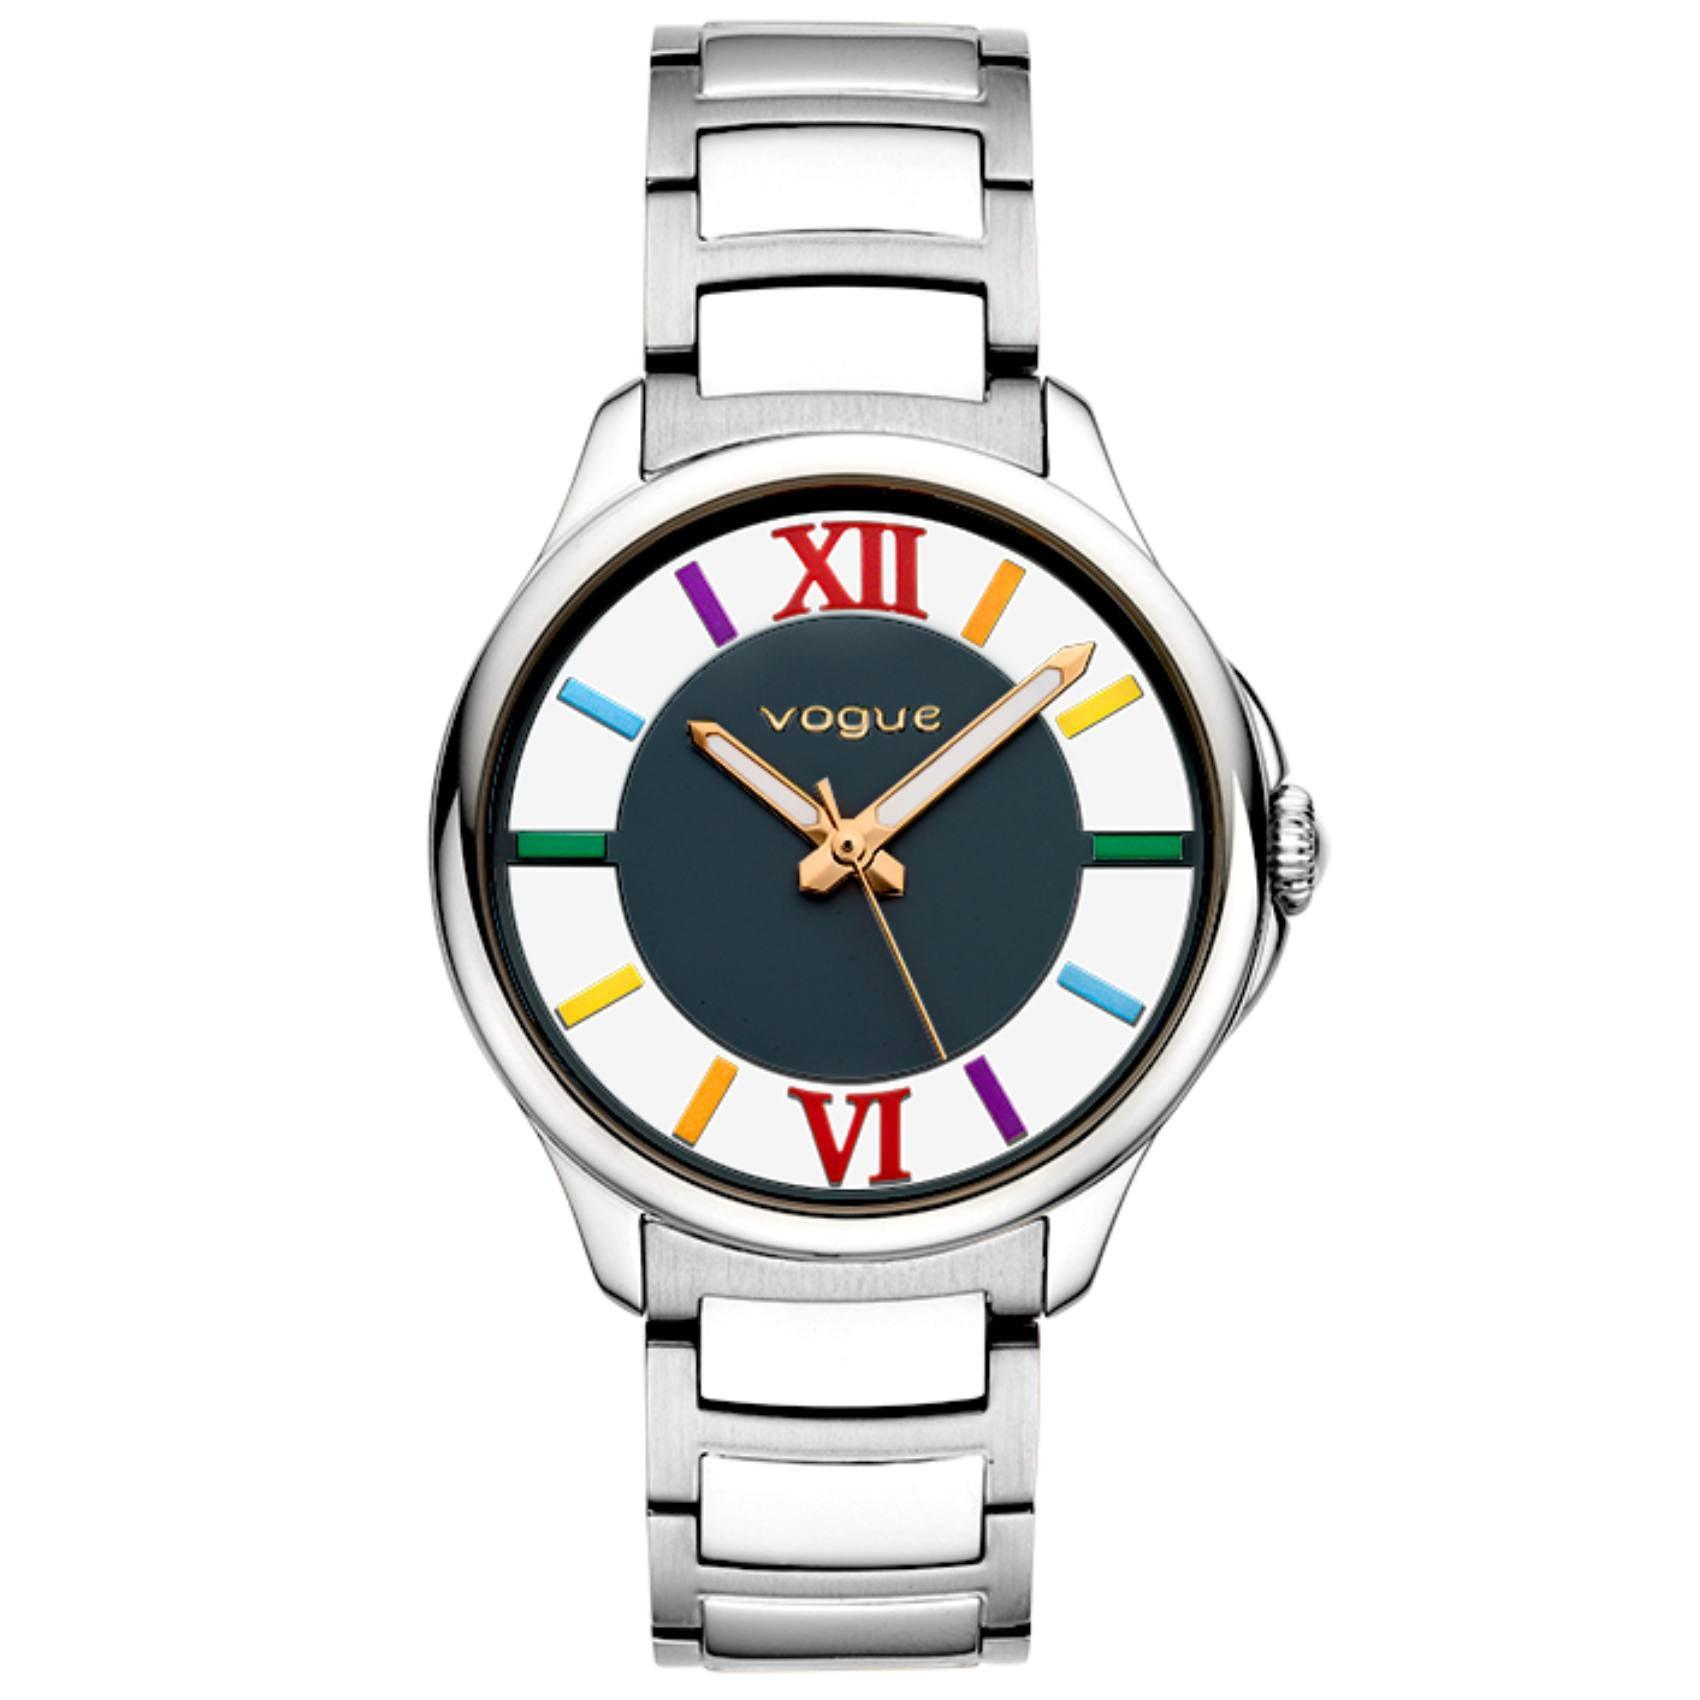 Γυναικείο ρολόι Vogue Marilyn 2020613082 με ασημί ατσάλινο μπρασελέ και μπλε καντράν διαμέτρου 37,5mm με πολύχρωμα νούμερα.